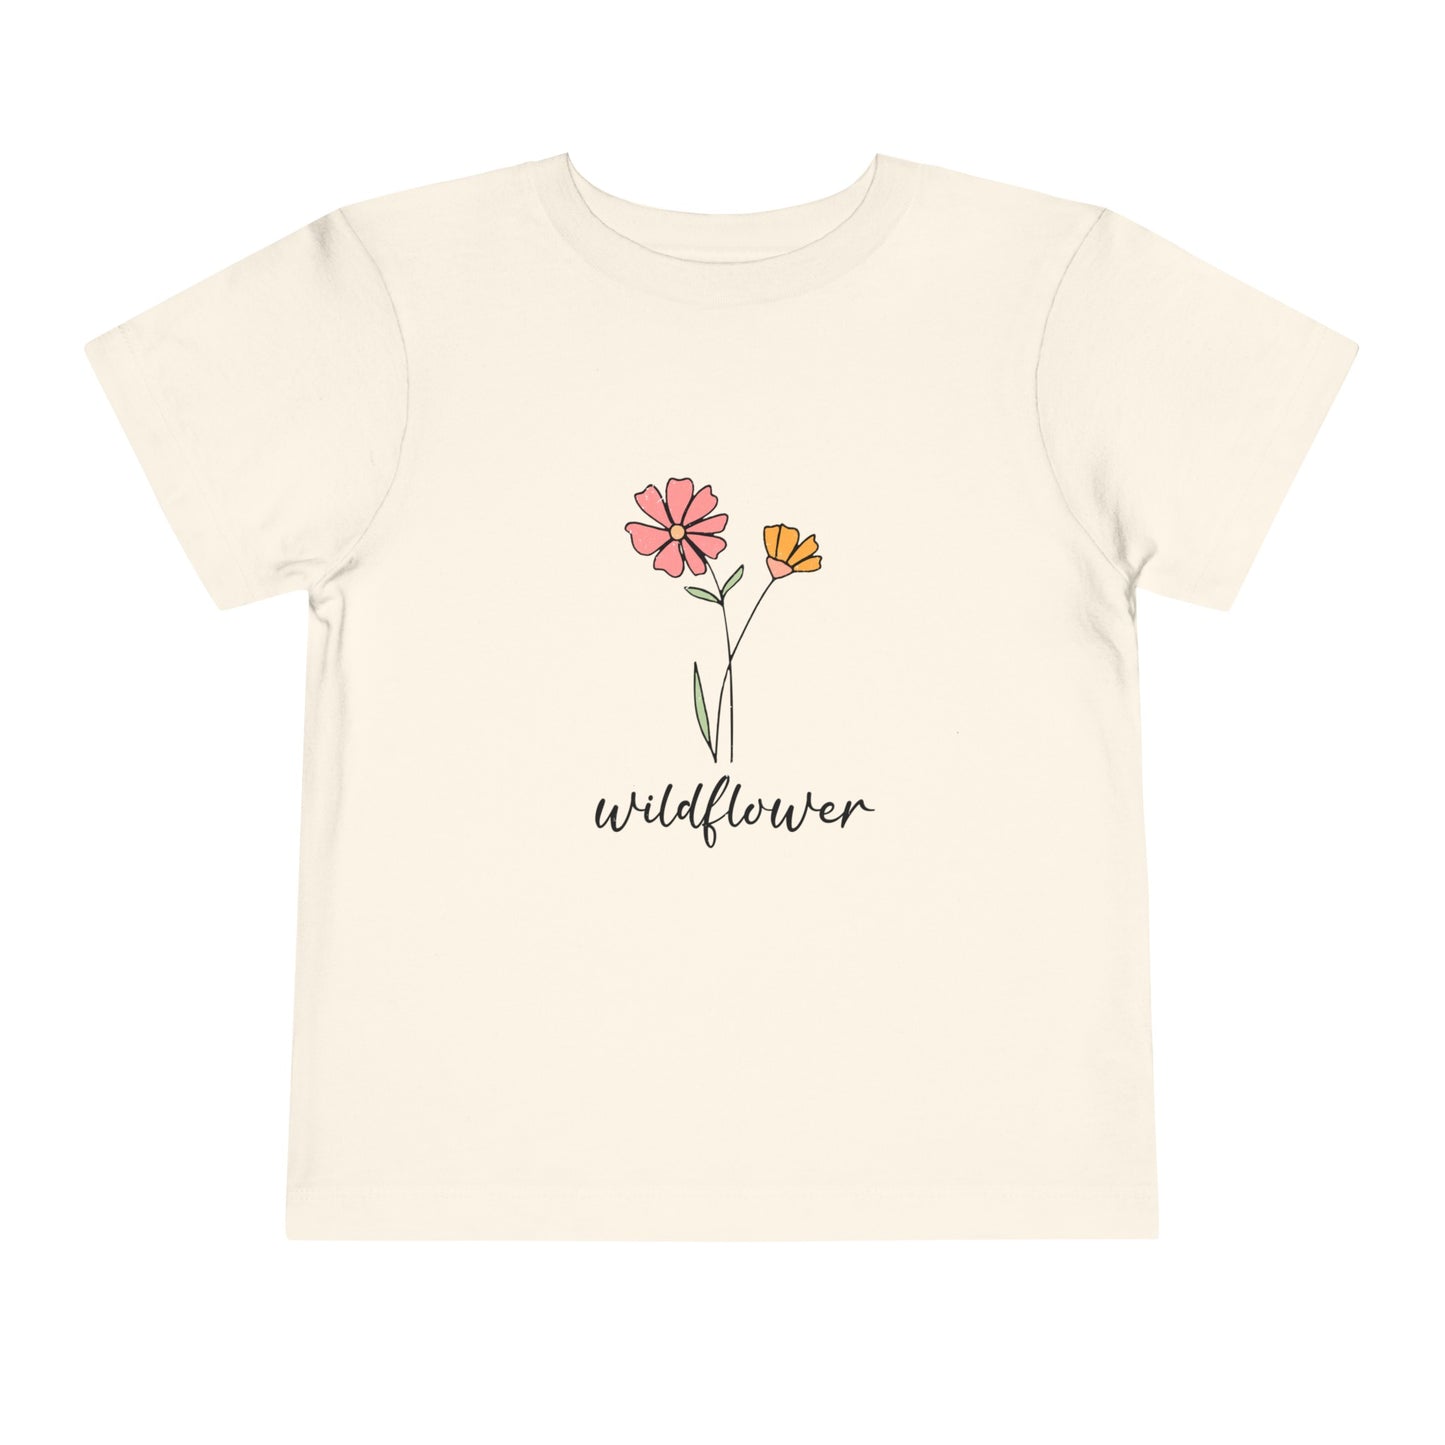 Wildflower Toddler Short Sleeve Tee